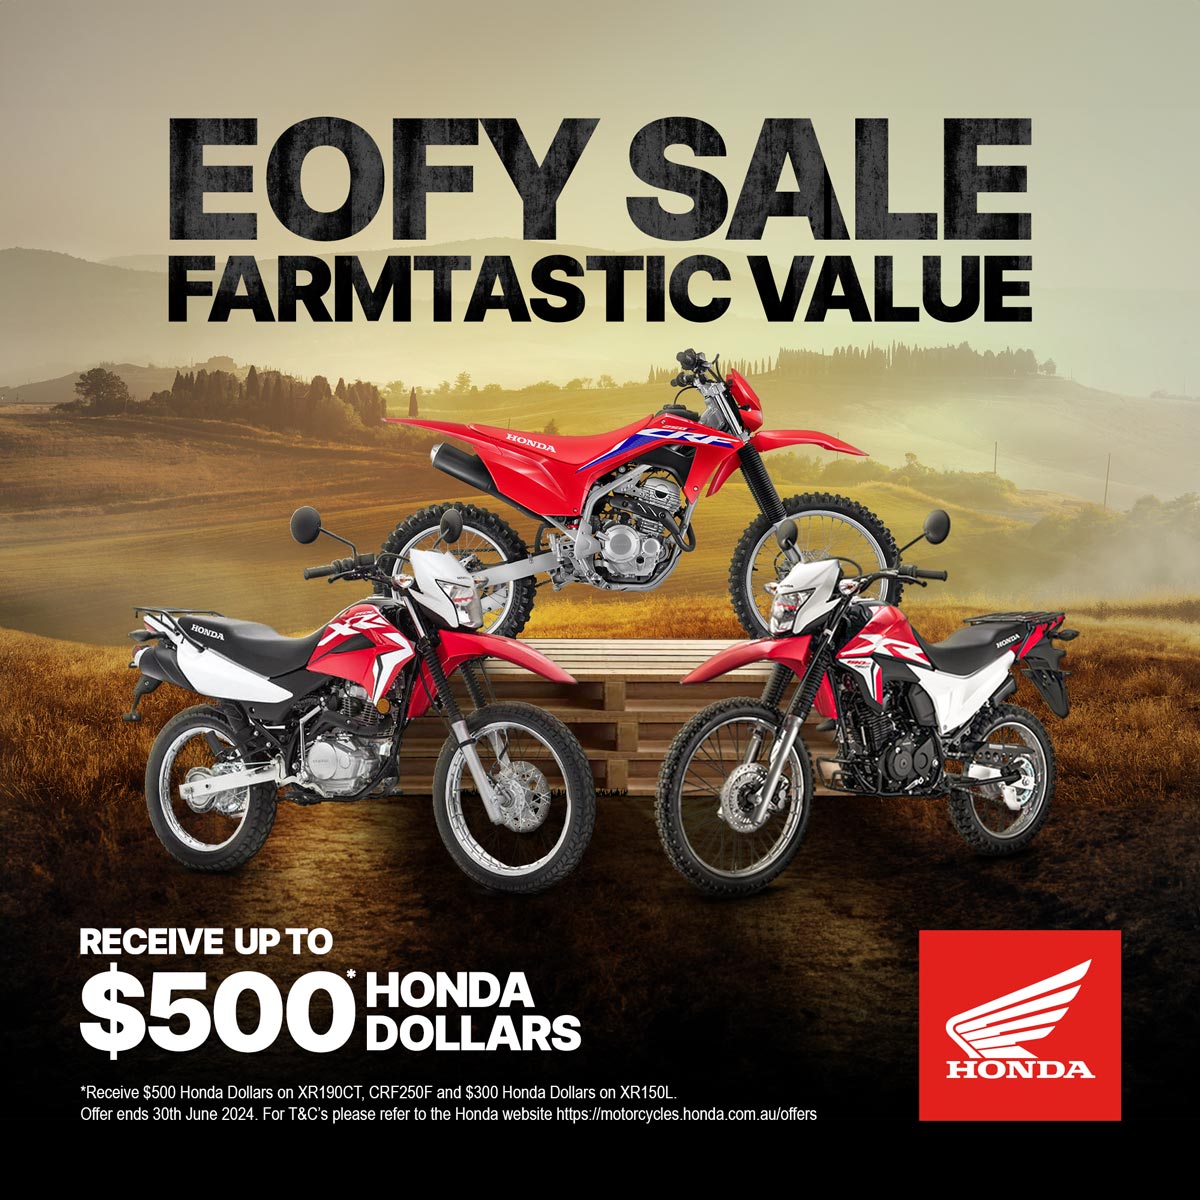 EOFY Sale Farmtastic Value